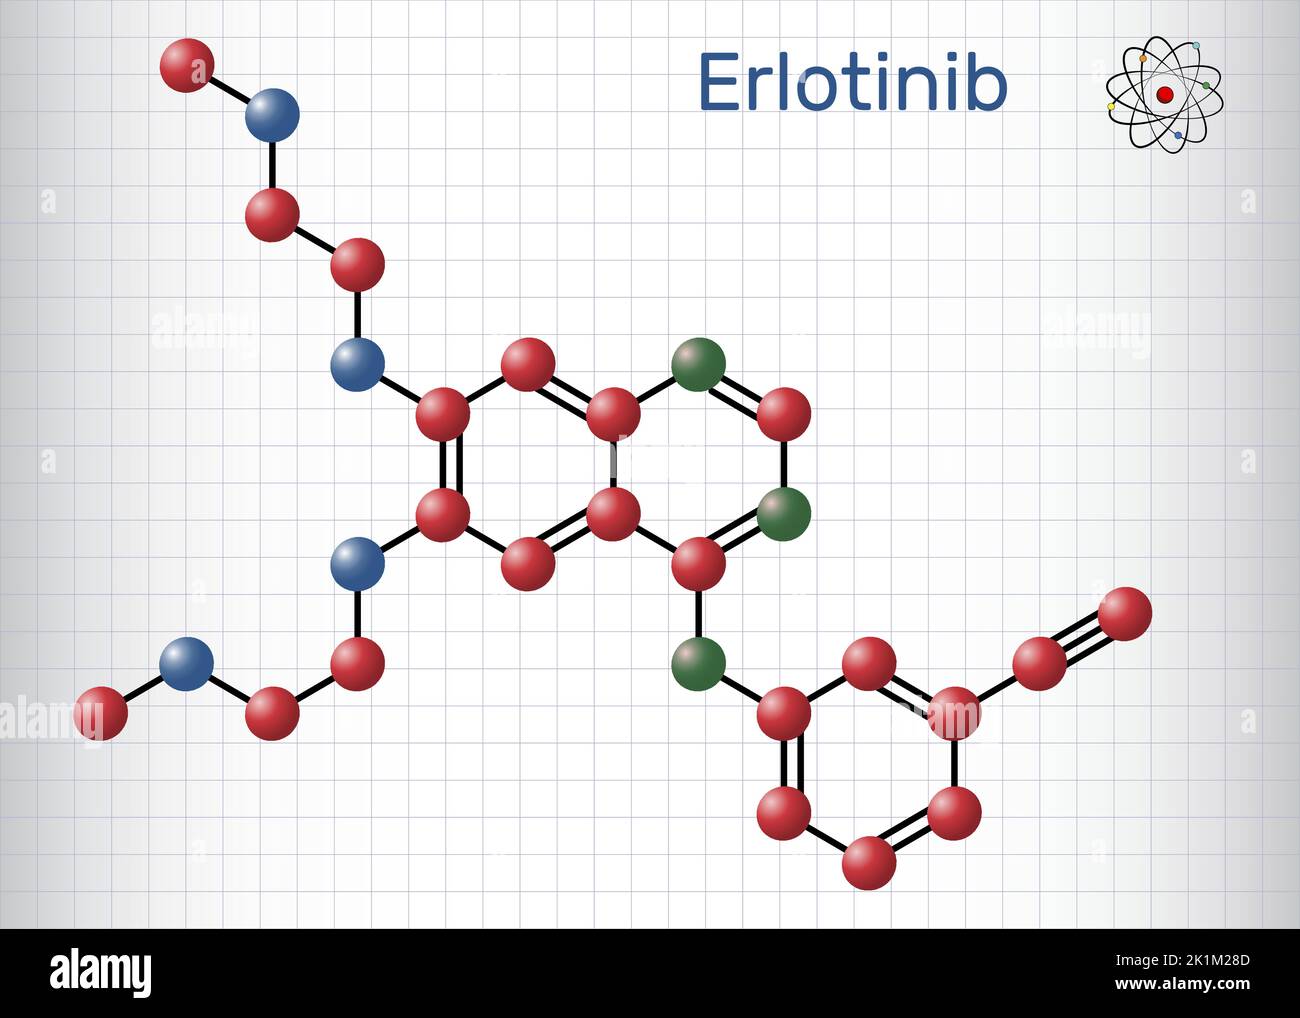 Erlotinib-Medikamentenmolekül. Es wird zur Behandlung von Lungenkrebs verwendet. Strukturformel, Molekülmodell. Blatt Papier in einem Käfig Stock Vektor